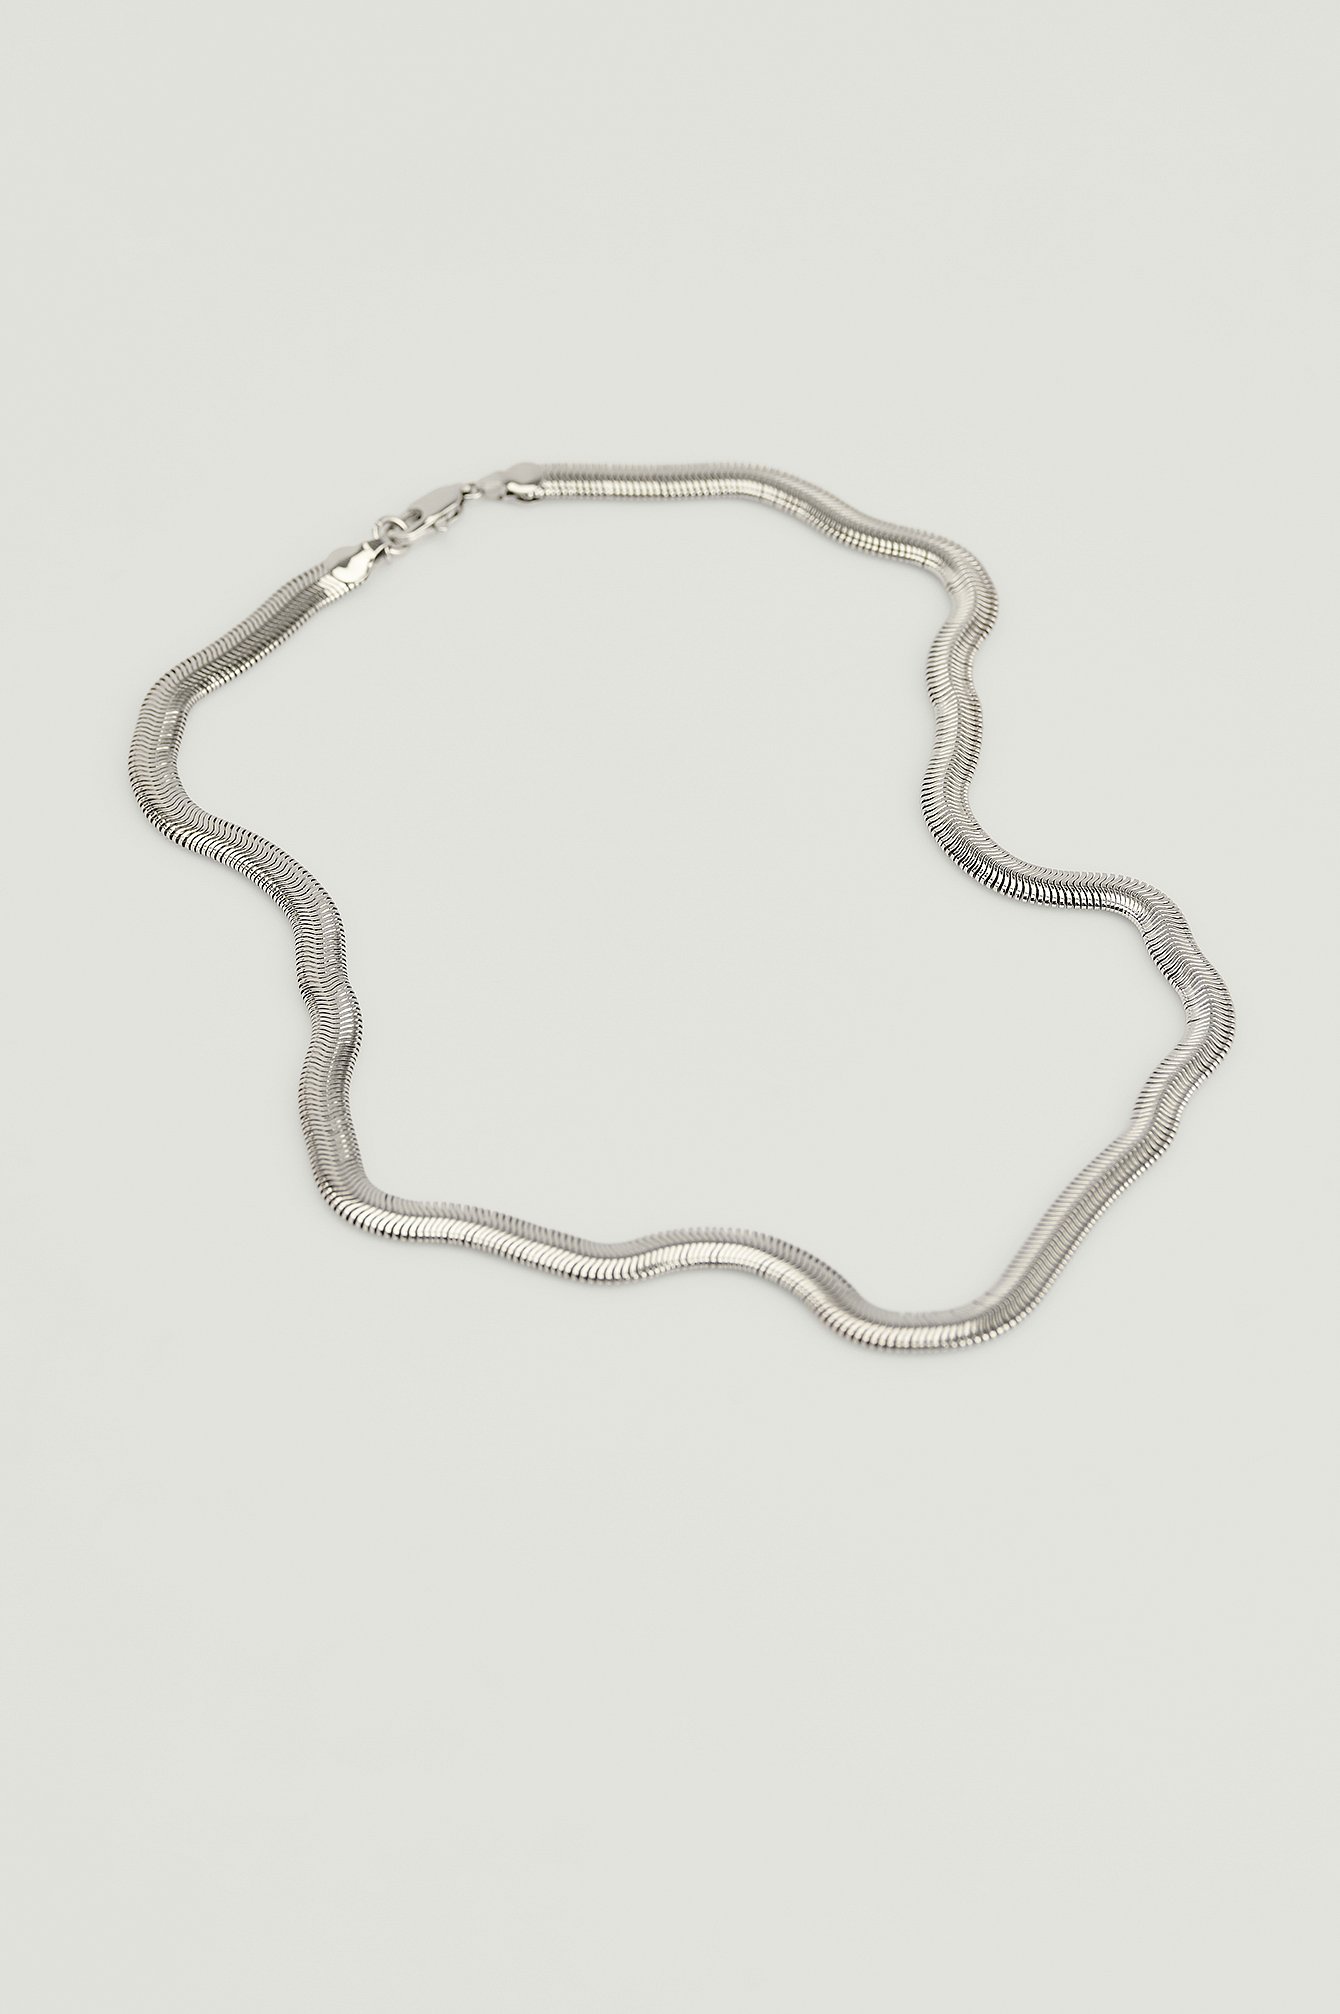 Silver Resirkulert sølvbelagt halskjede med slangelenke